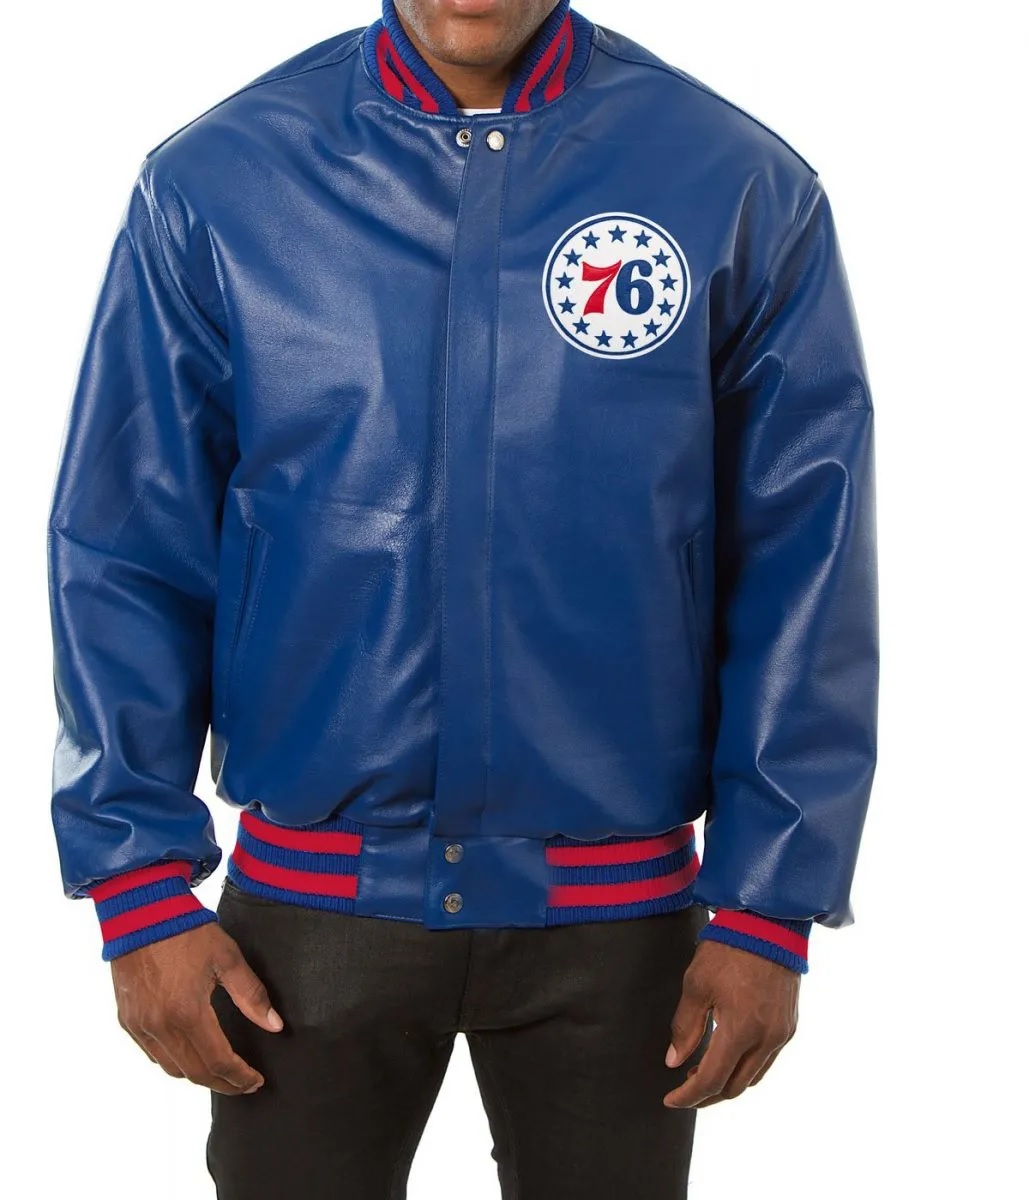 Varsity Philadelphia 76ers Royal Blue Leather Jacket